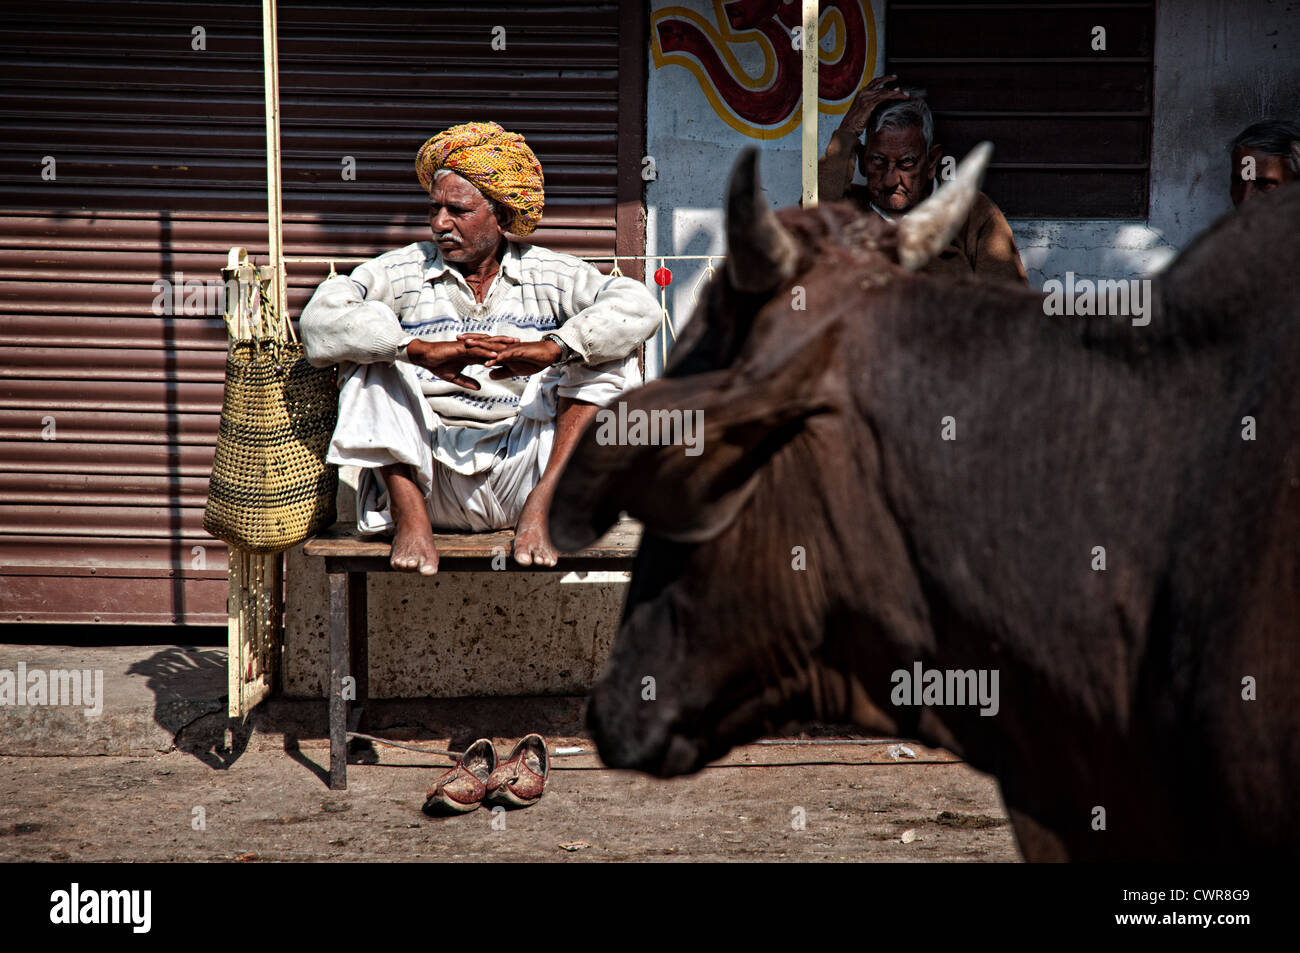 Mann trägt traditionelle Kleidung auf einer Bank sitzen, während Kuh übergeben wird. Jodhpur, Rajasthan, Indien Stockfoto